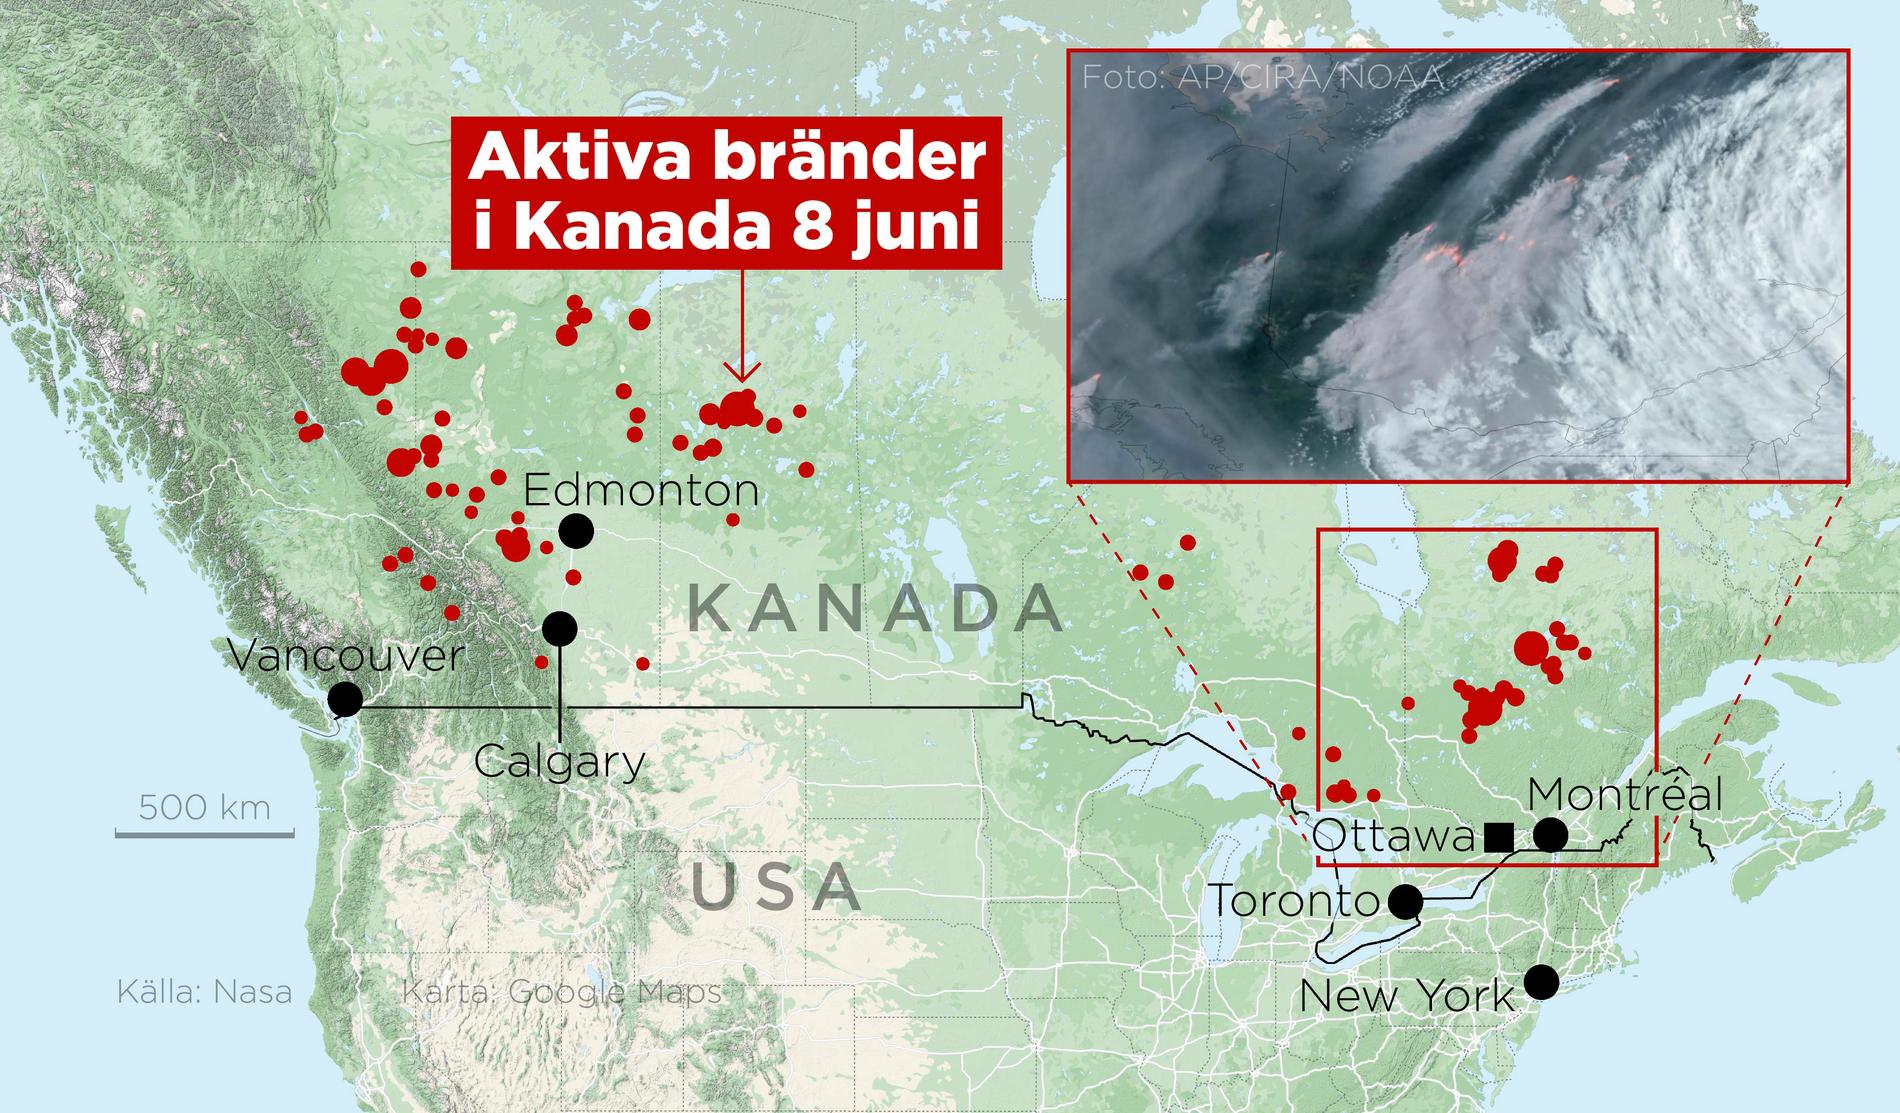 Aktiva bränder i Kanada 8 juni.